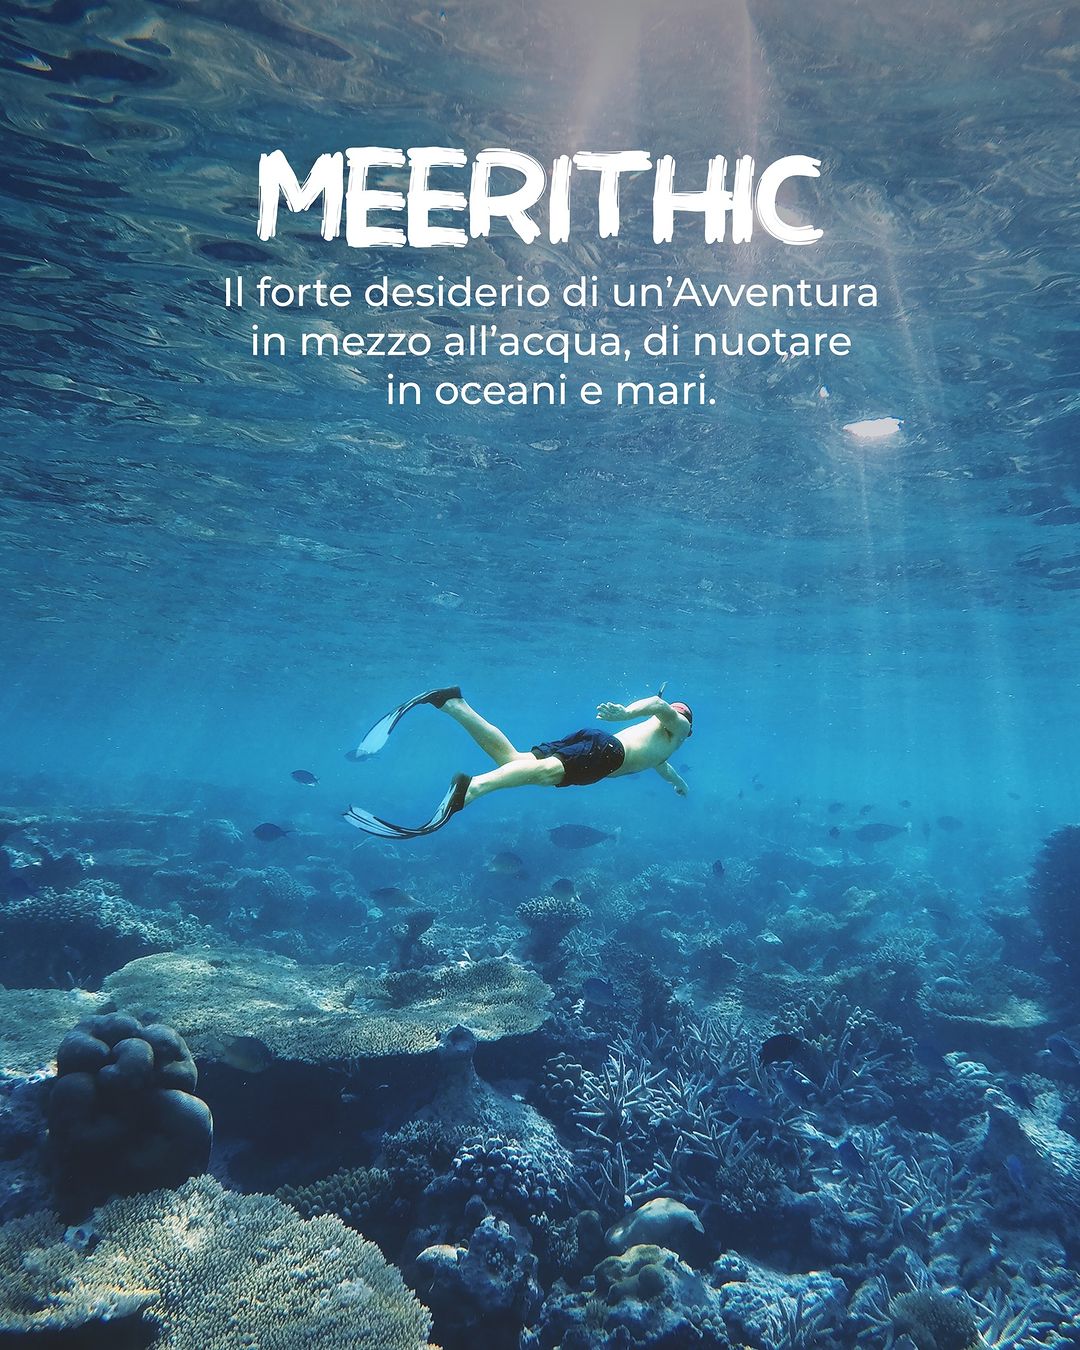 Meerithic